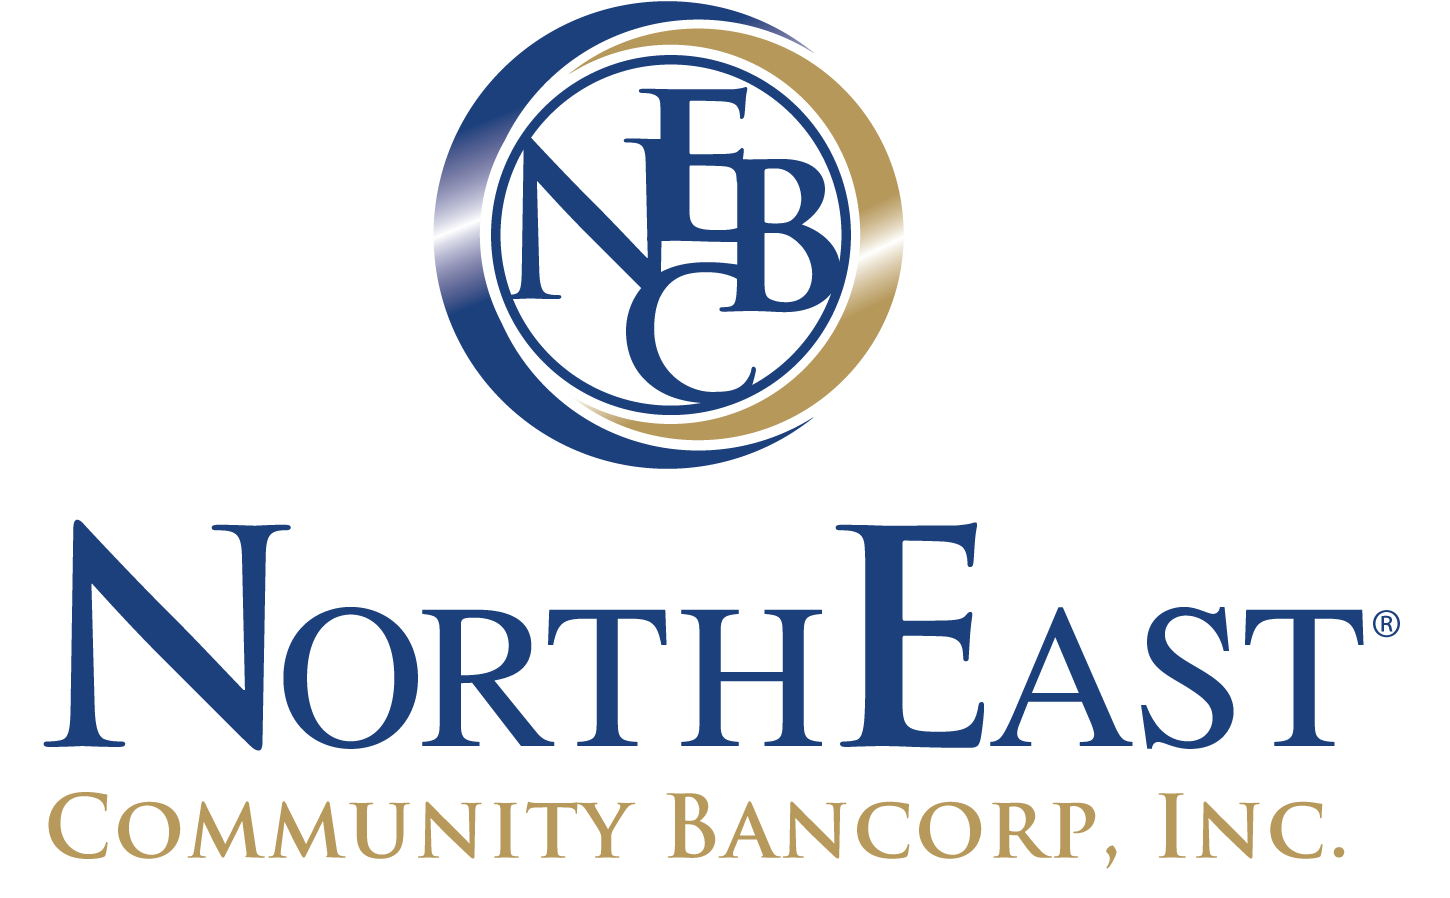 NorthEast Community Bancorp, Inc. Announces Quarterly Cash